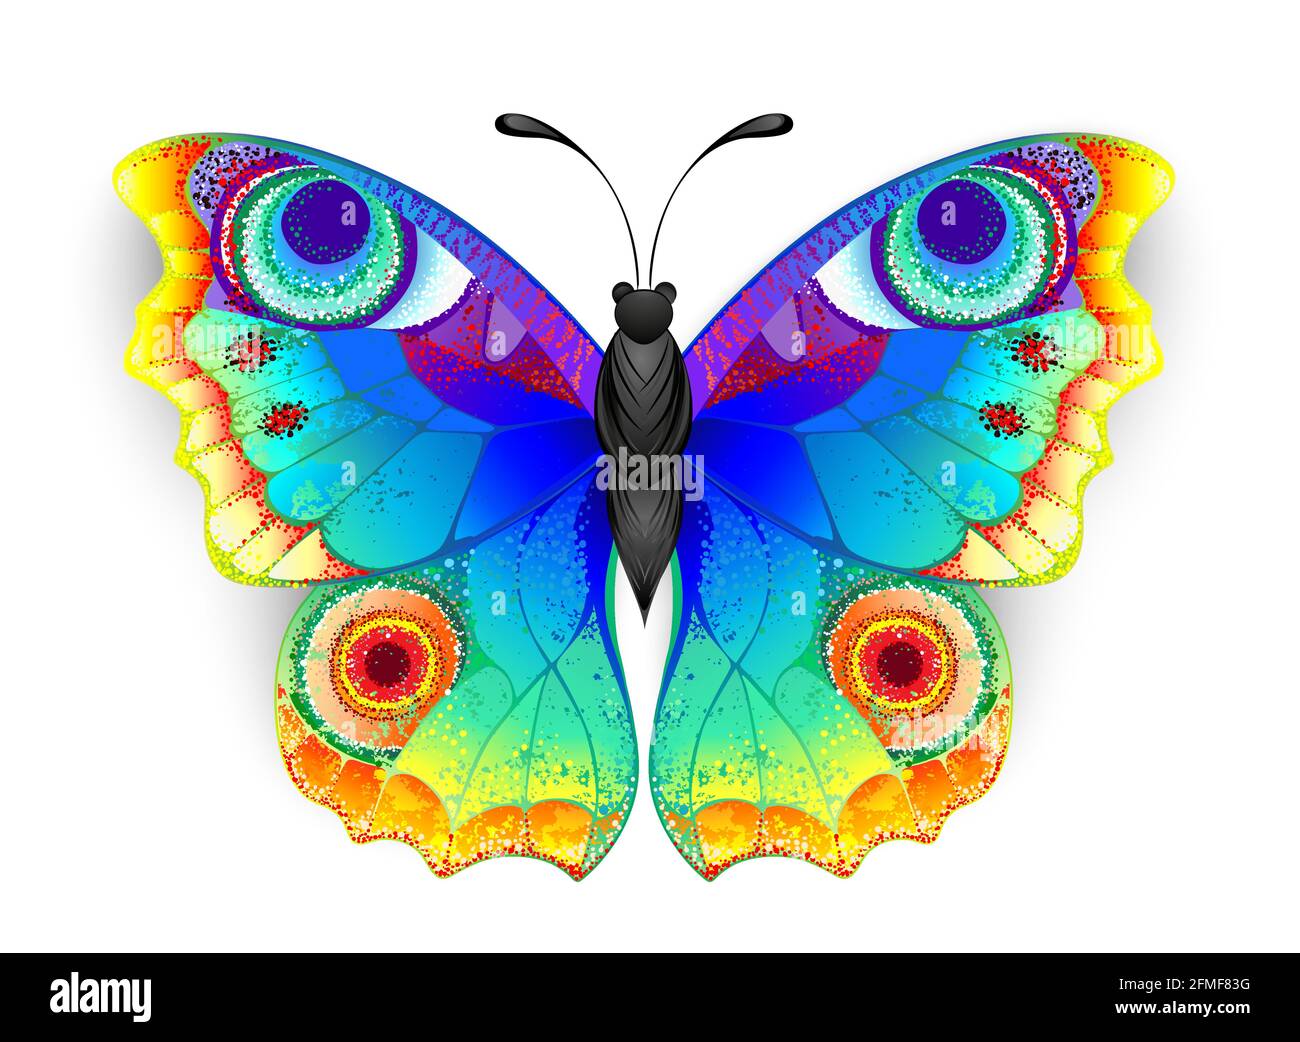 Arcobaleno, realistico, artisticamente disegnato, colori brillanti farfalla pavone con ali texture dettagliate su sfondo bianco. Farfalla arcobaleno. Illustrazione Vettoriale